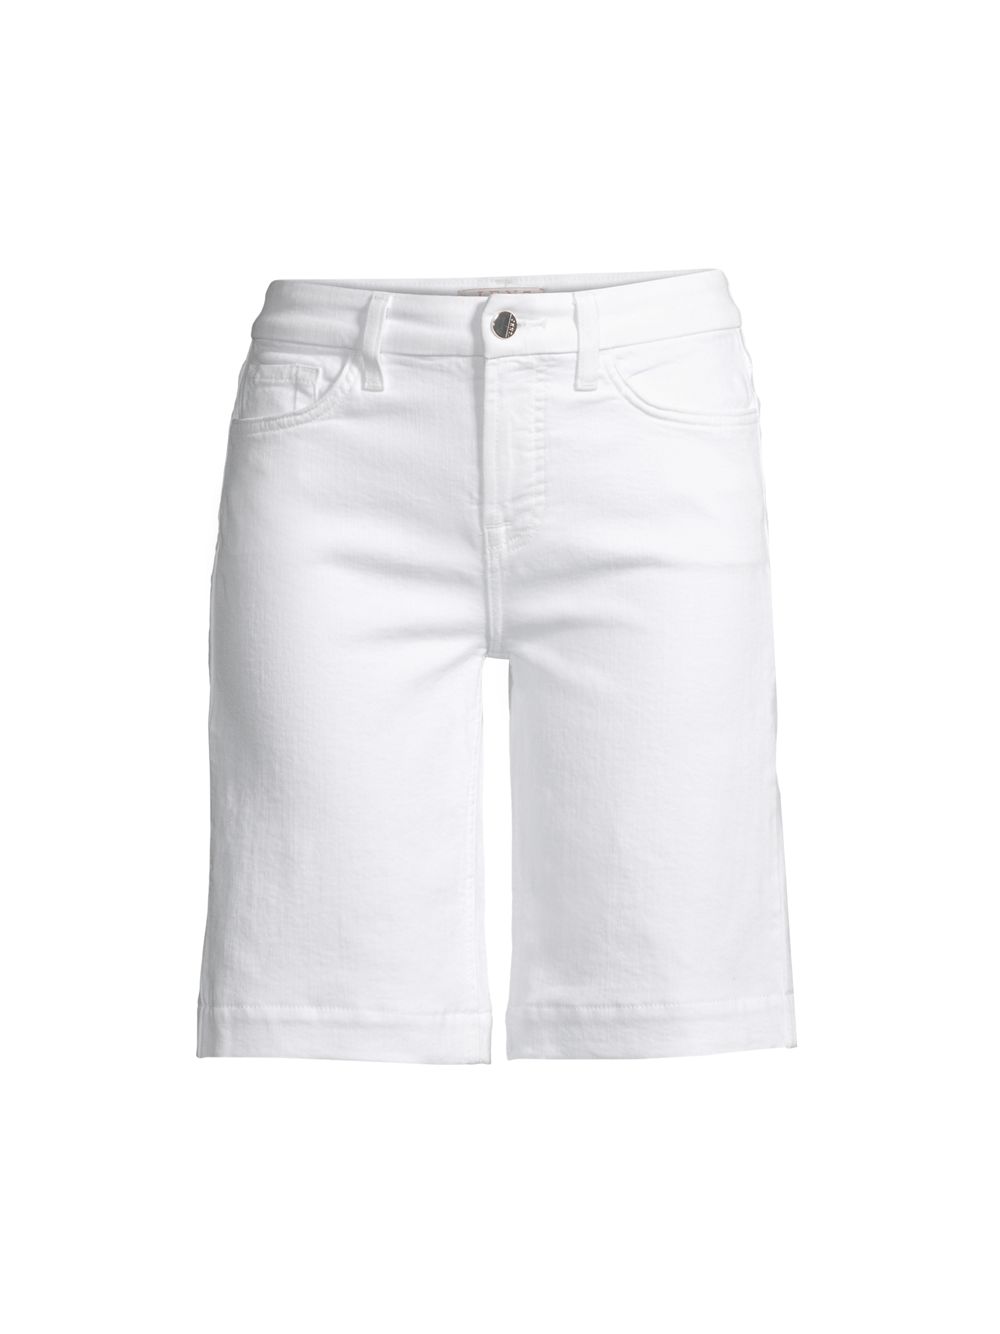 Скульптурные джинсовые шорты-бермуды Jen7, белый